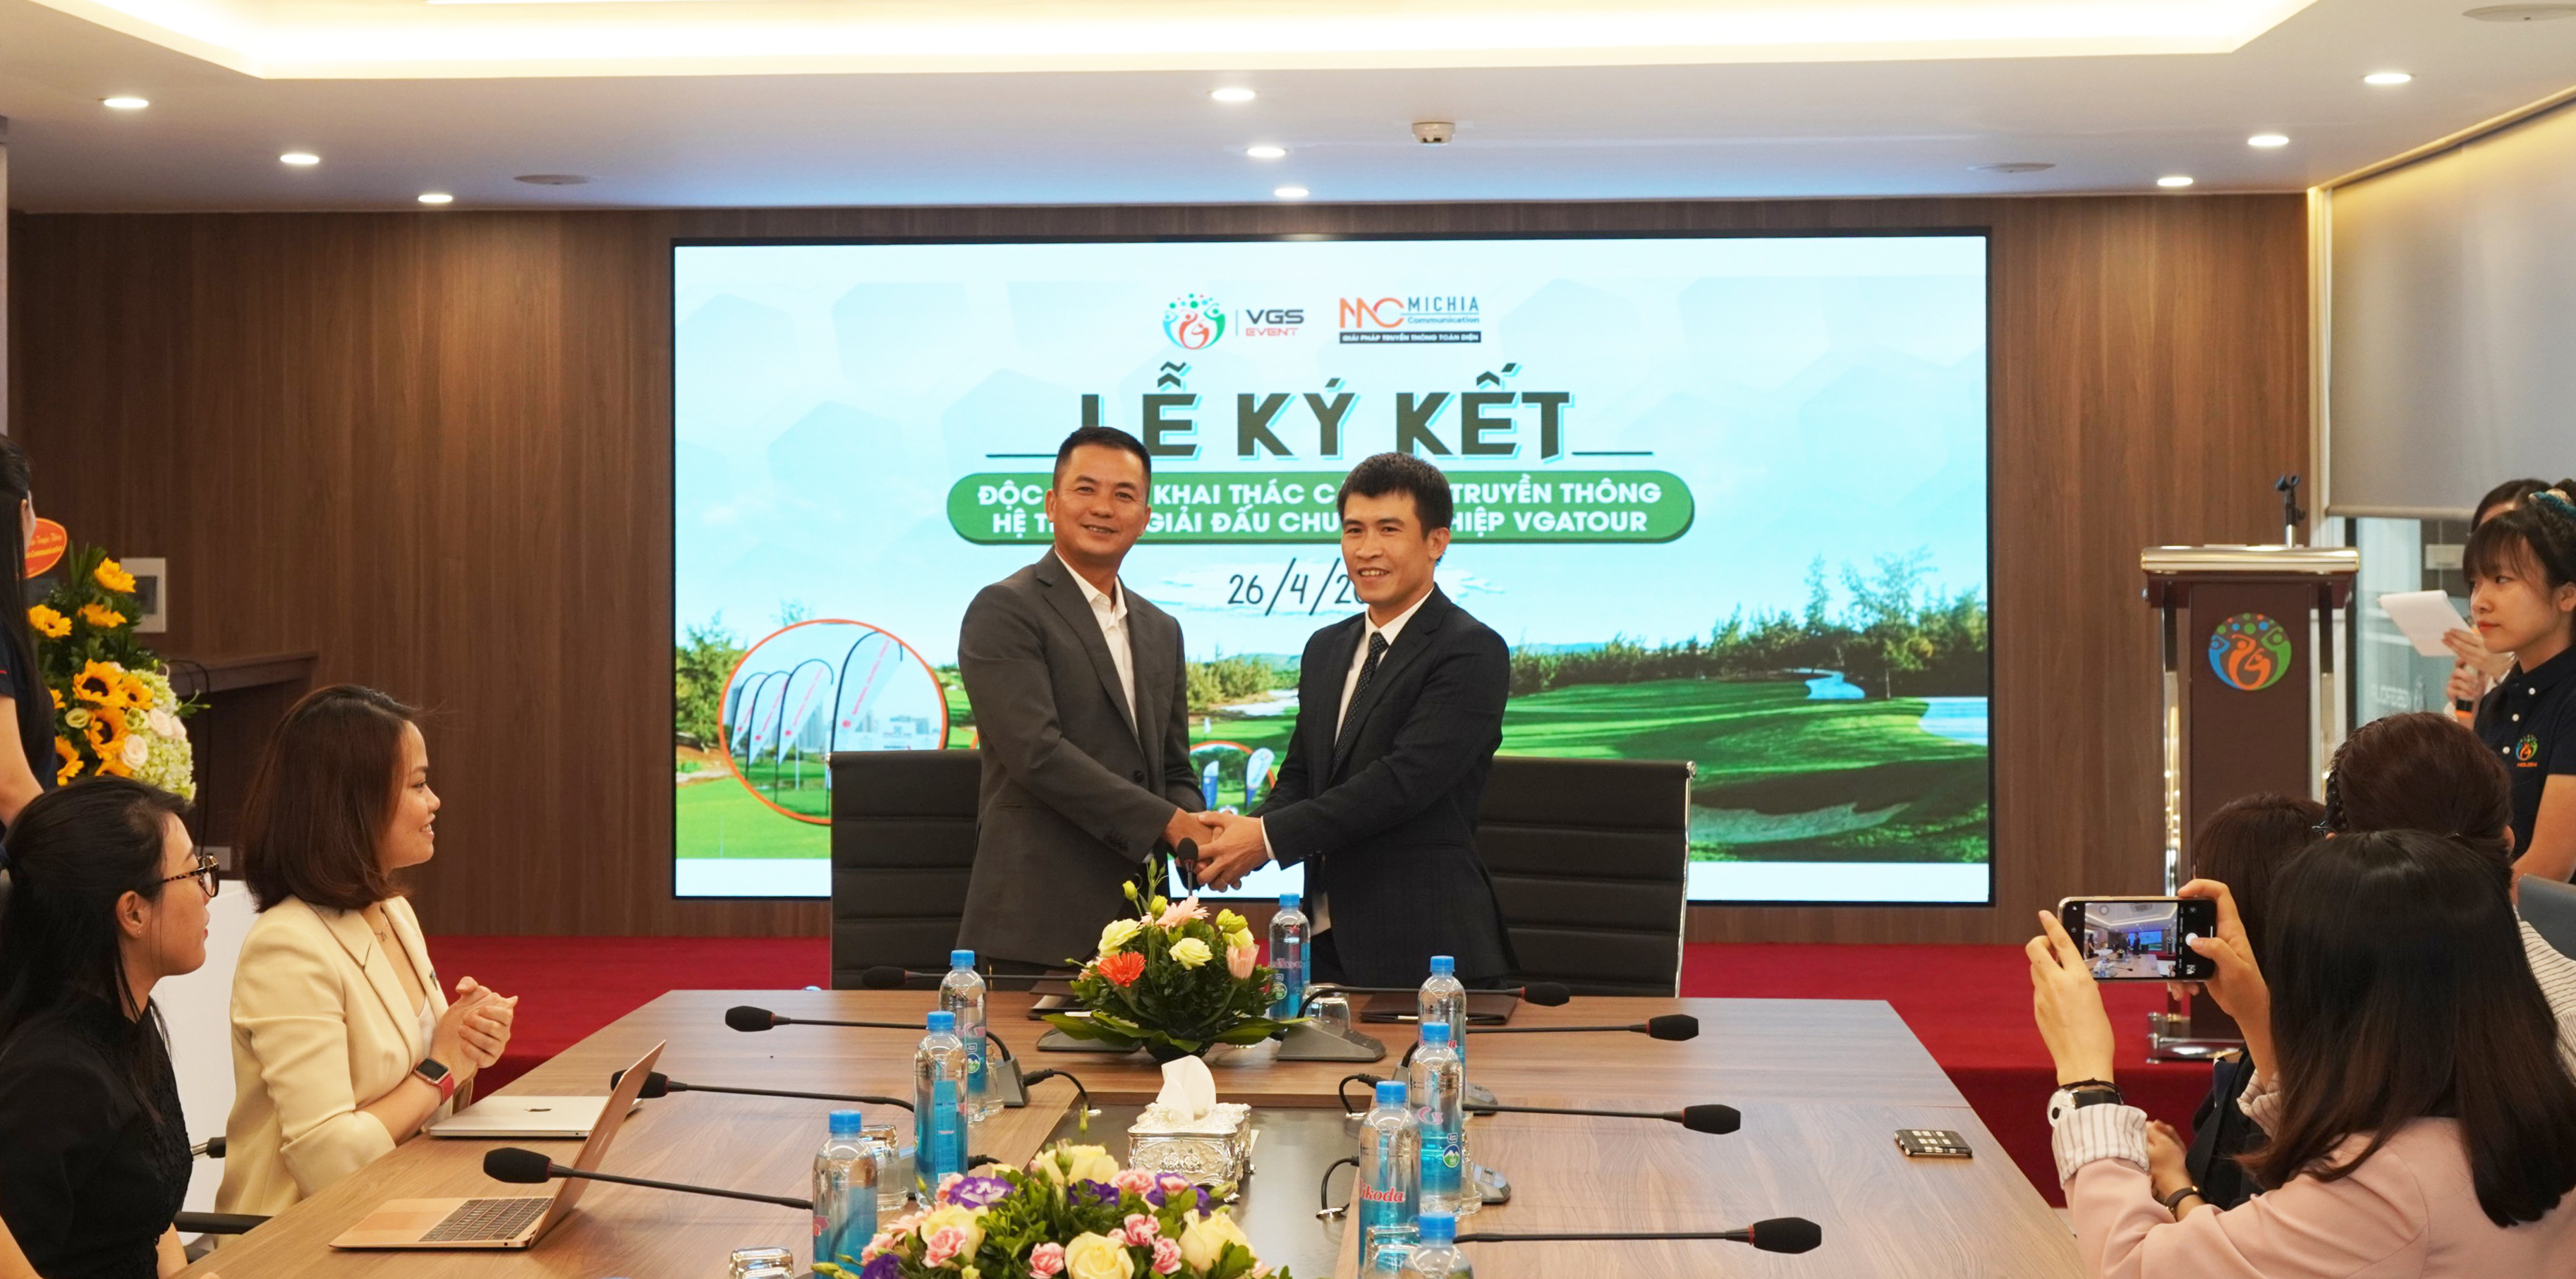 VGS Event hợp tác chiến lược với Michia Communication đẩy mạnh truyền thông hệ thống giải đấu golf tại Việt Nam